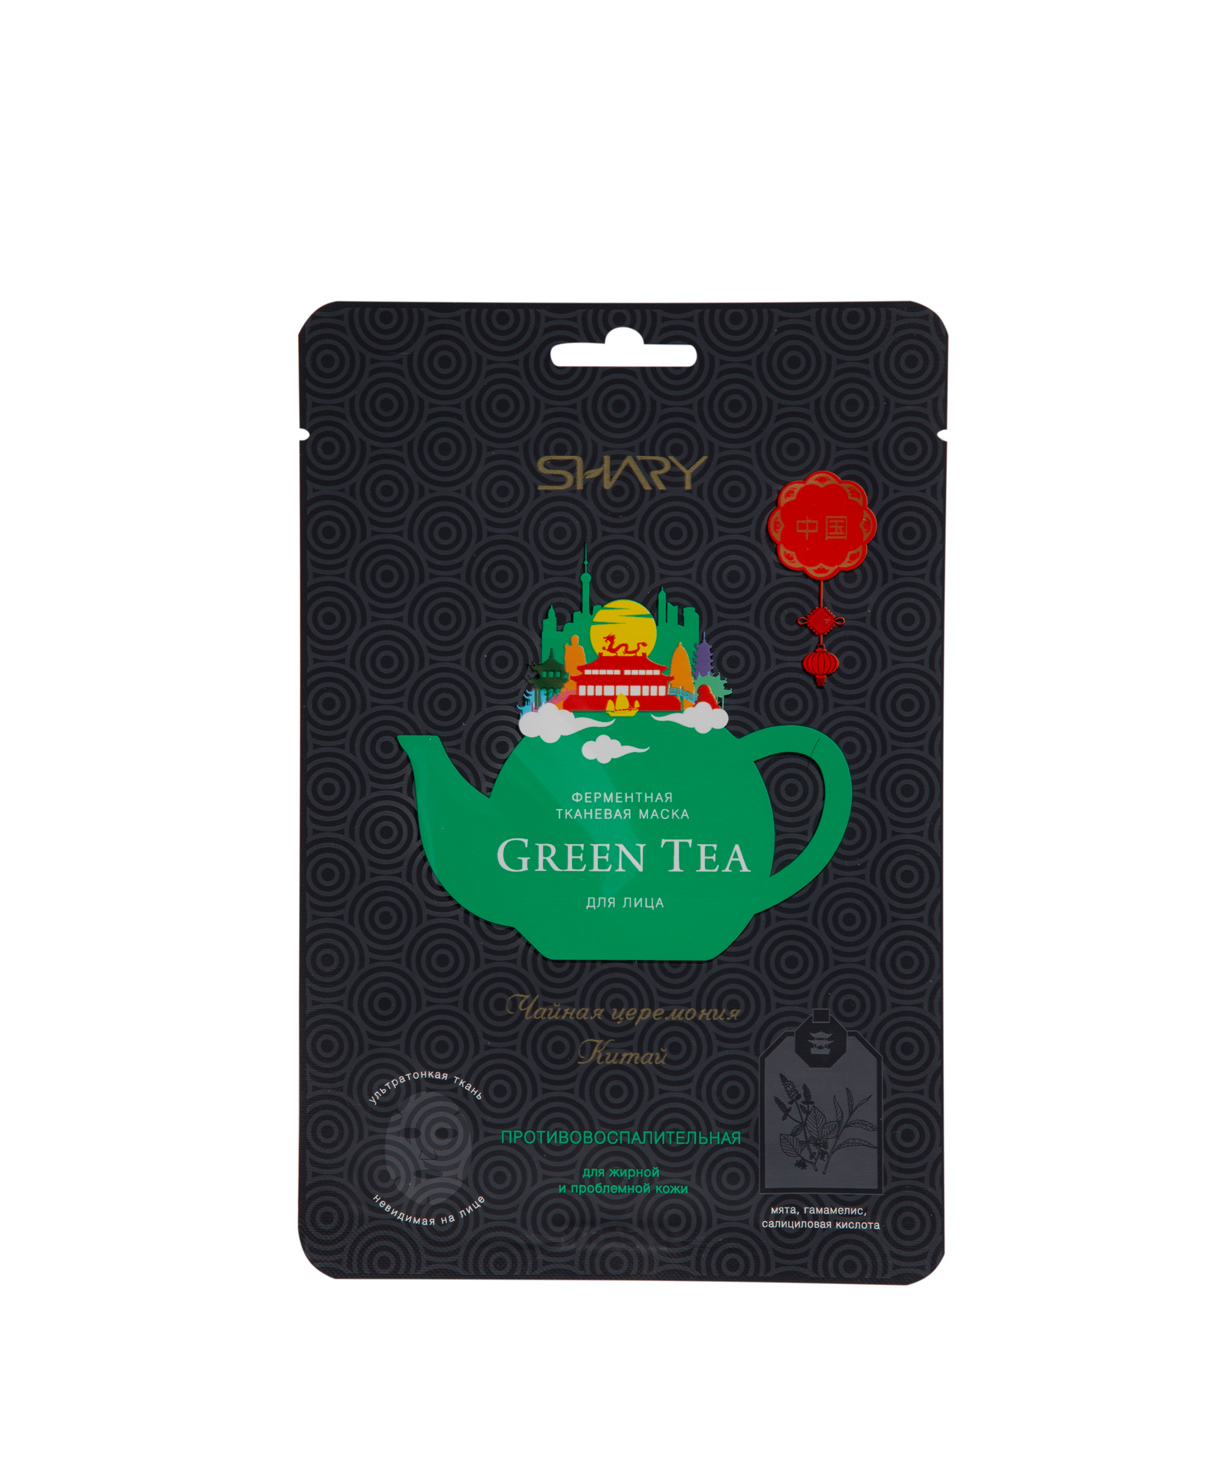 Маска `Shary` Зеленый чай